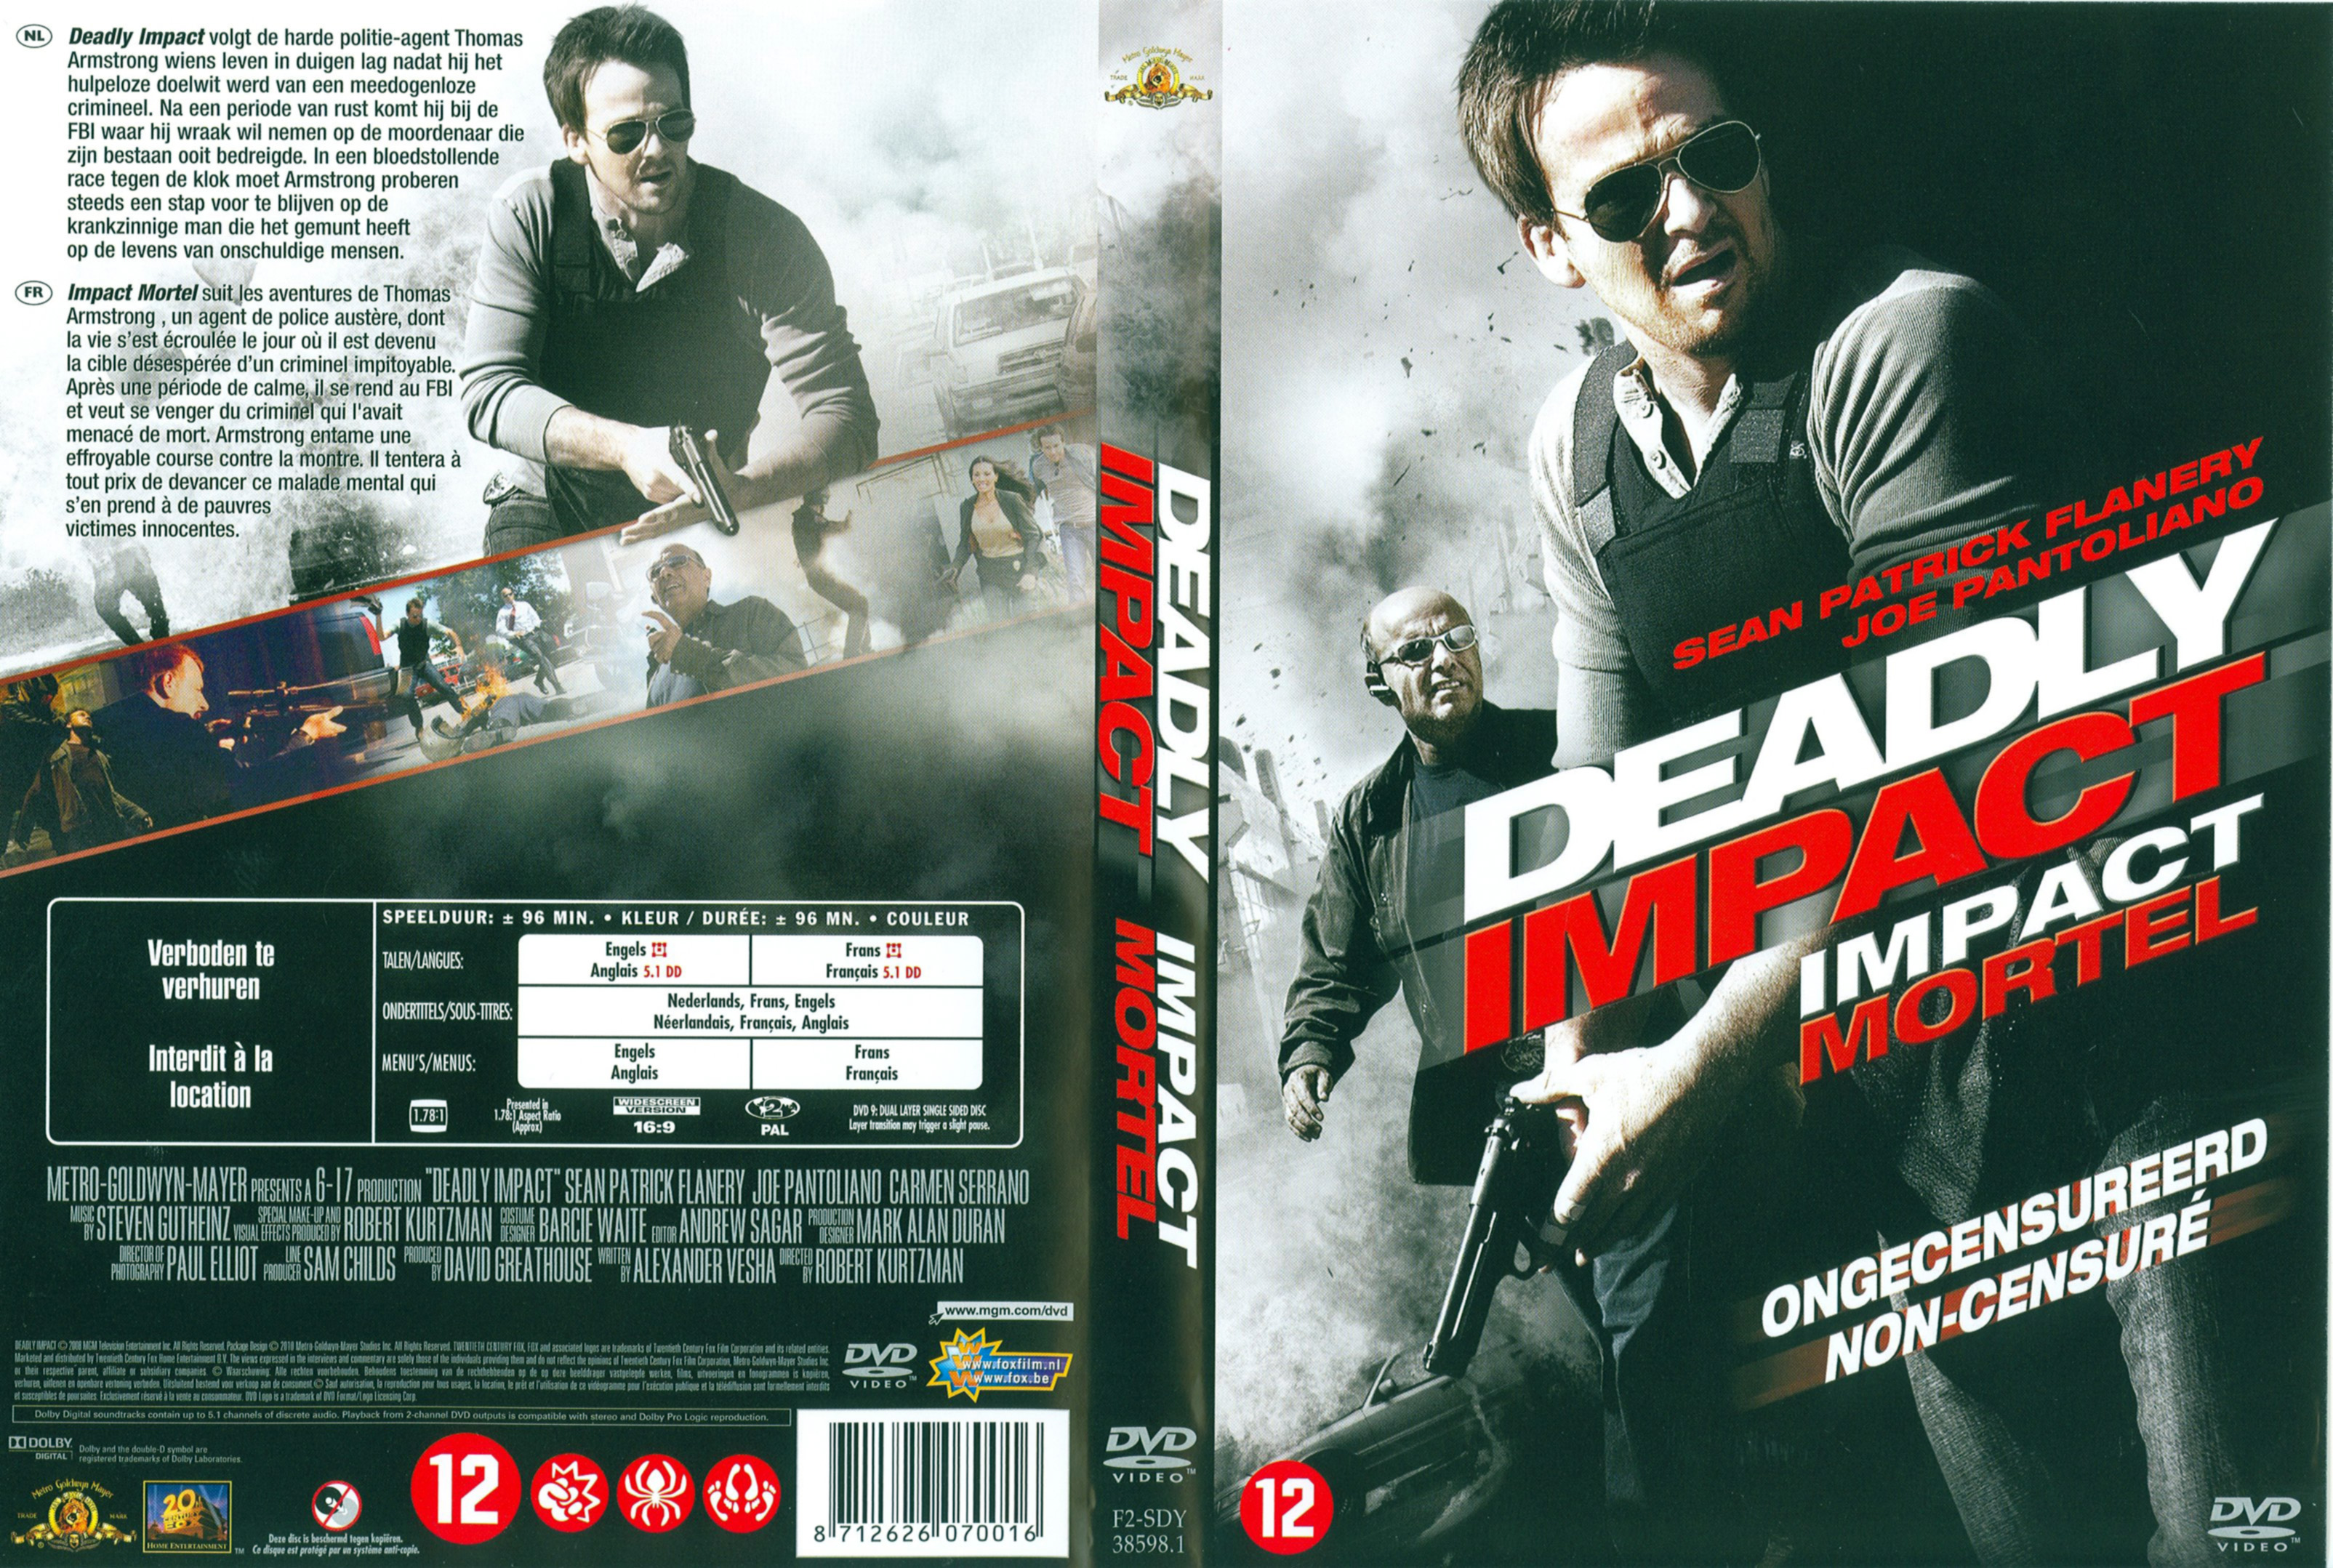 Jaquette DVD Deadly impact - Impact mortel